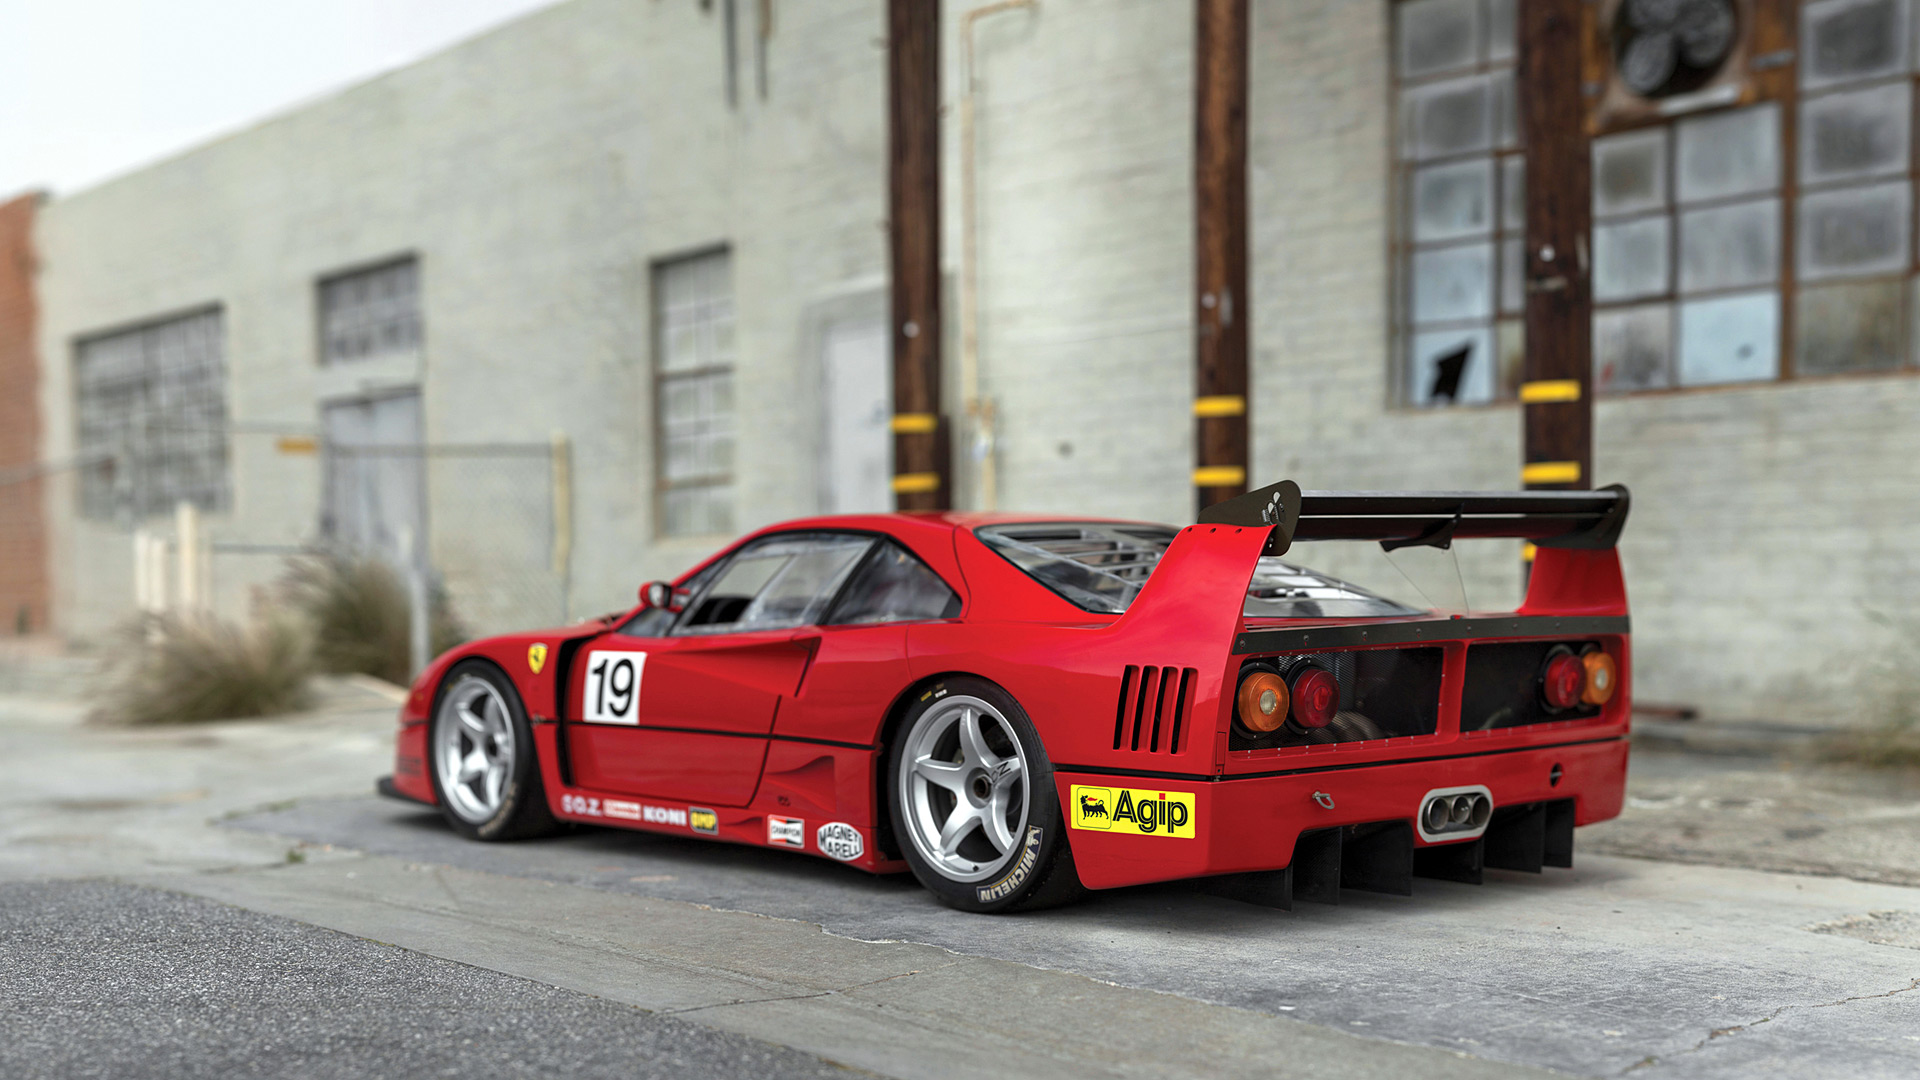  1989 Ferrari F40 LM Wallpaper.